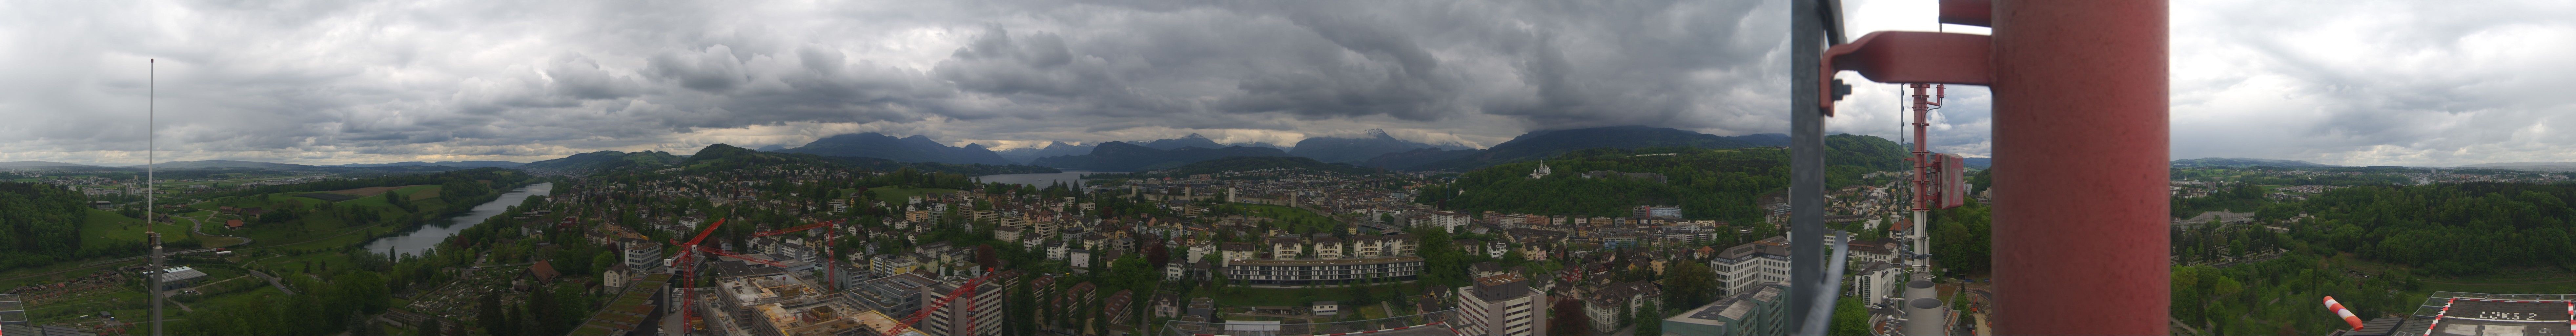 Luzern: Luzerner Kantonsspital